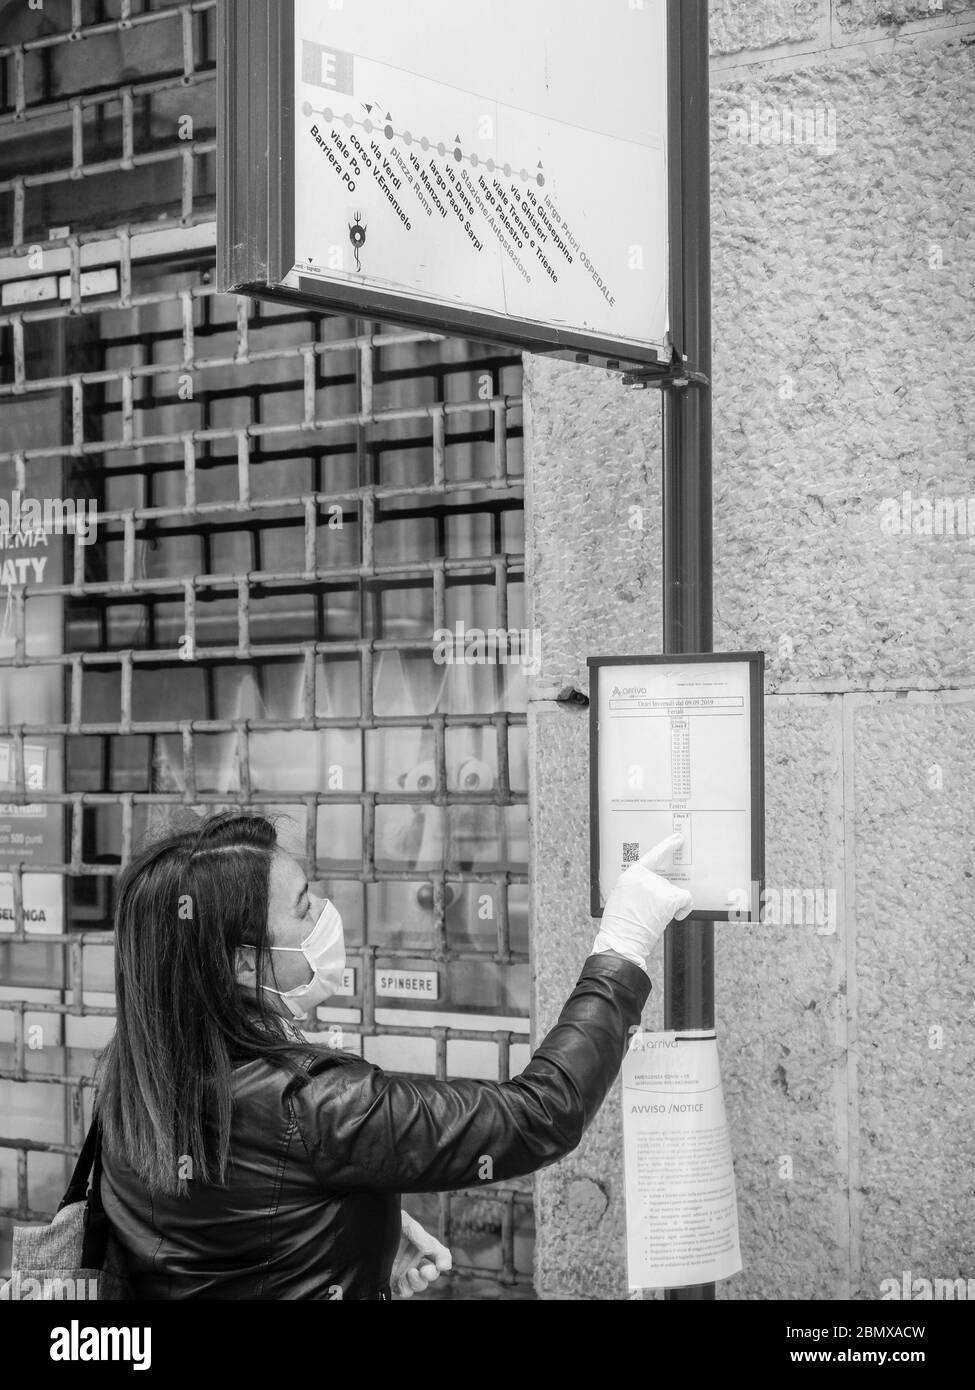 femme caucasique adulte portant un masque médical et des gants de protection stériles, lisant la liste des arrêts de bus et des informations en attendant le bus à venir Banque D'Images